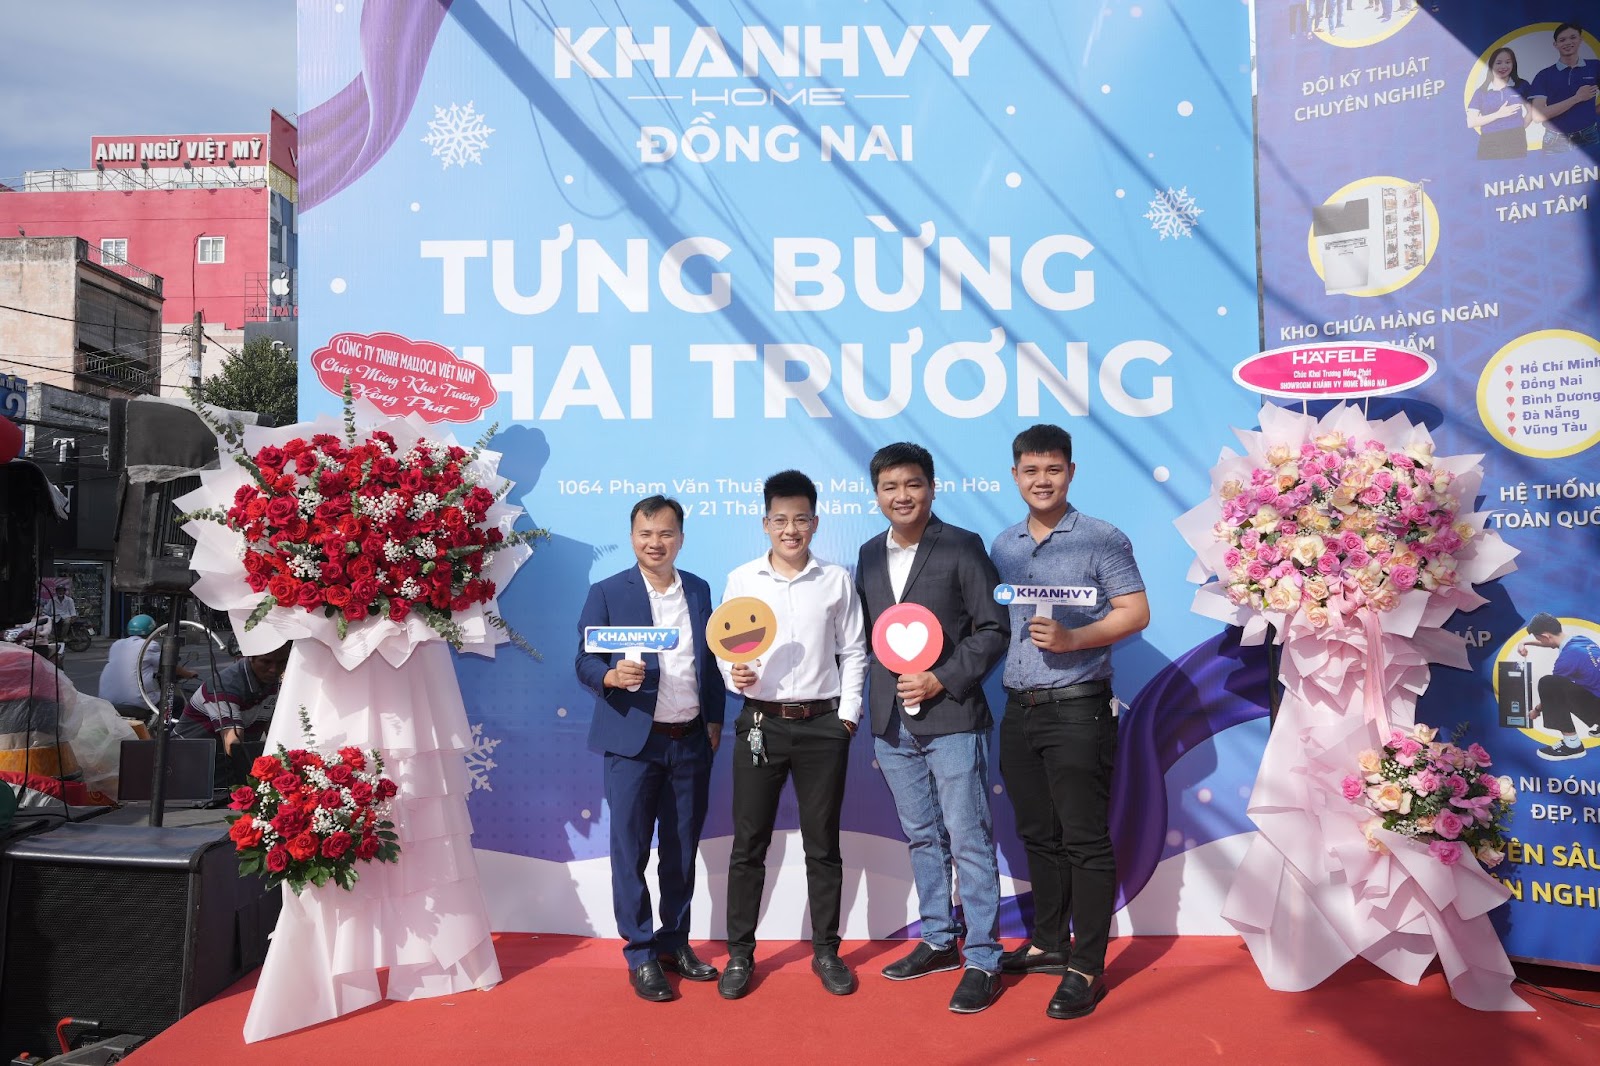 Khánh Vy Home khai trương showroom Đồng Nai - Hàng trăm quà tặng giá trị cùng ưu đãi cực sốc